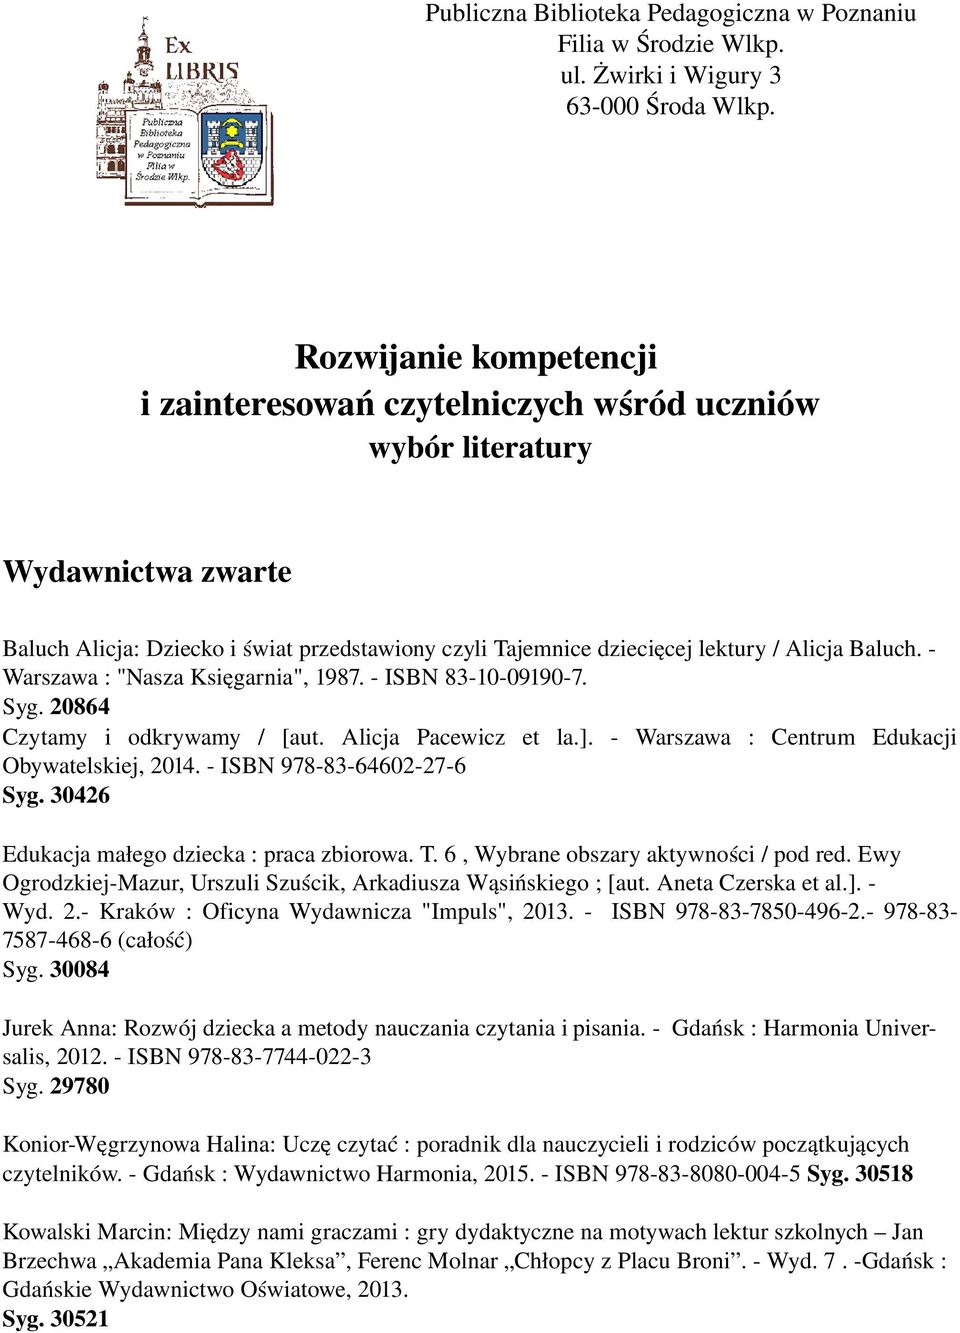 Warszawa : "Nasza Księgarnia", 1987. ISBN 83 10 09190 7. Syg. 20864 Czytamy i odkrywamy / [aut. Alicja Pacewicz et la.]. Warszawa : Centrum Edukacji Obywatelskiej, 2014. ISBN 978 83 64602 27 6 Syg.